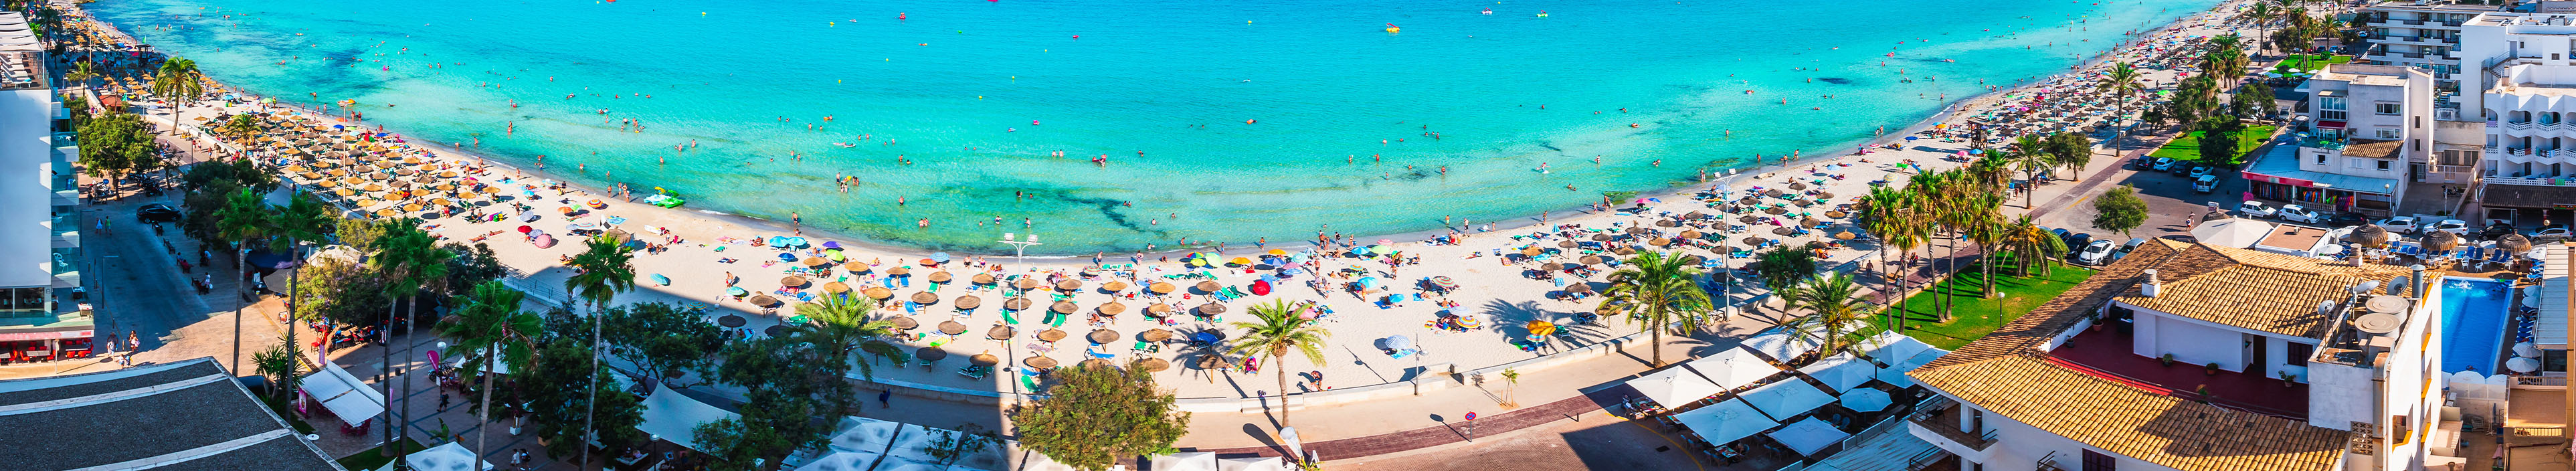 Strand in Spanien mit Hotels, Palmen, türkisblaues Meer mit Badegästen